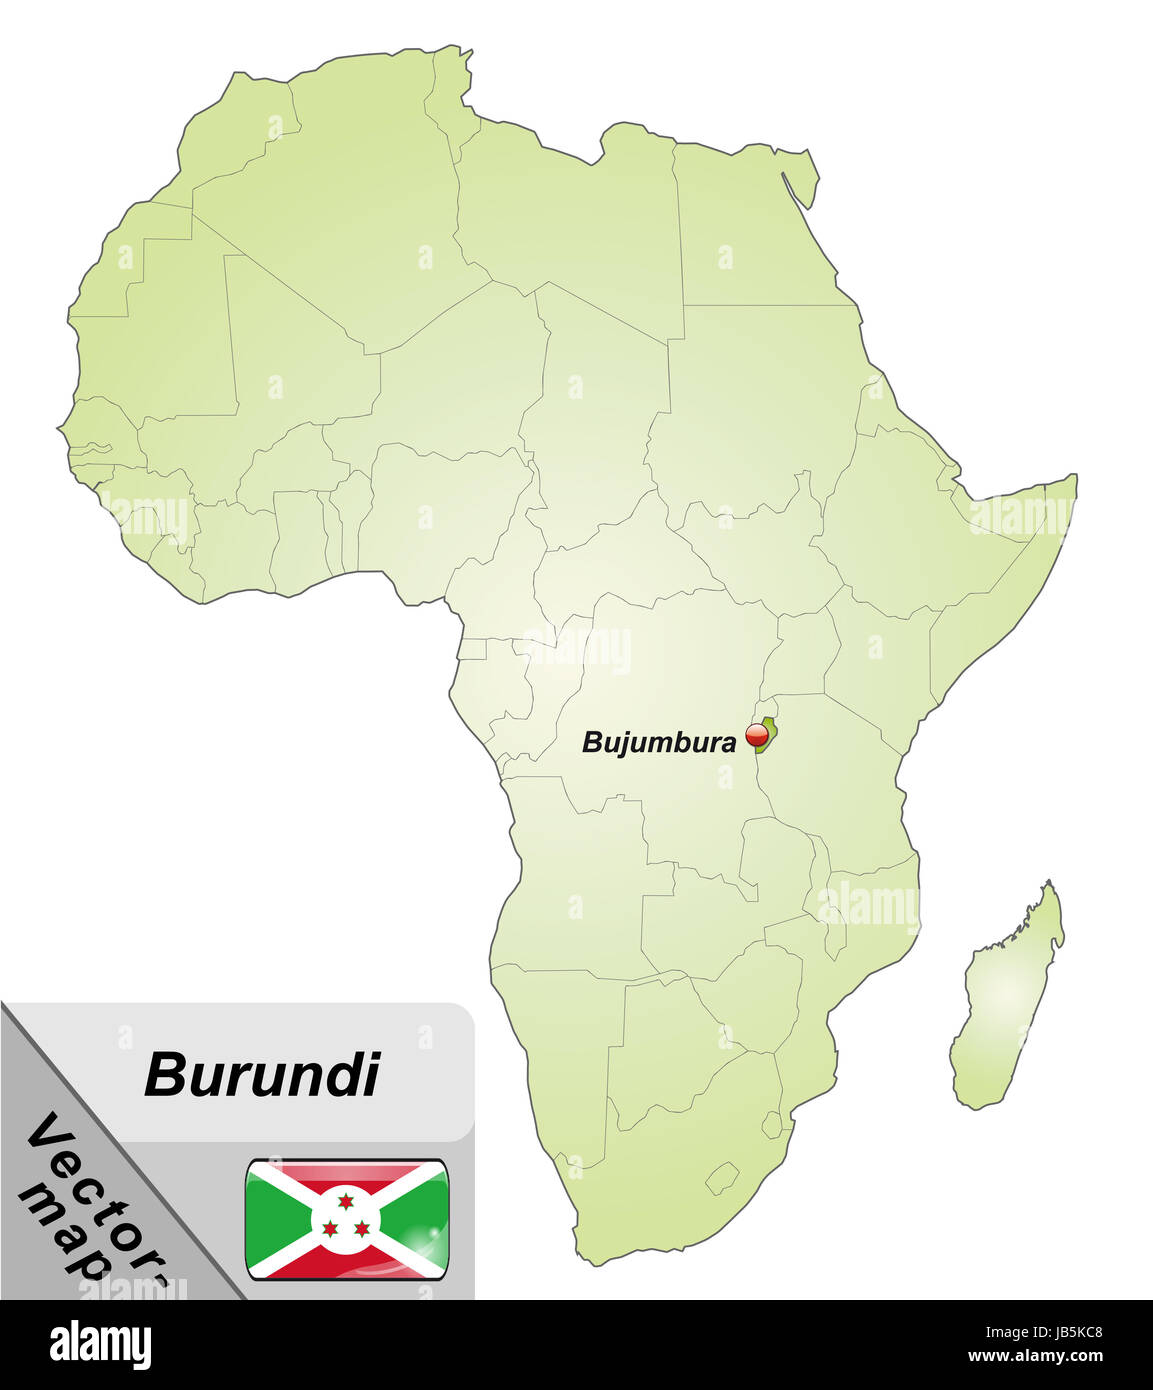 Le Burundi dans Inselkarte Afrika als dans Grün. Durch die Gestaltung ansprechende fügt sich die Karte perfekt dans Ihr Vorhaben ein. Banque D'Images